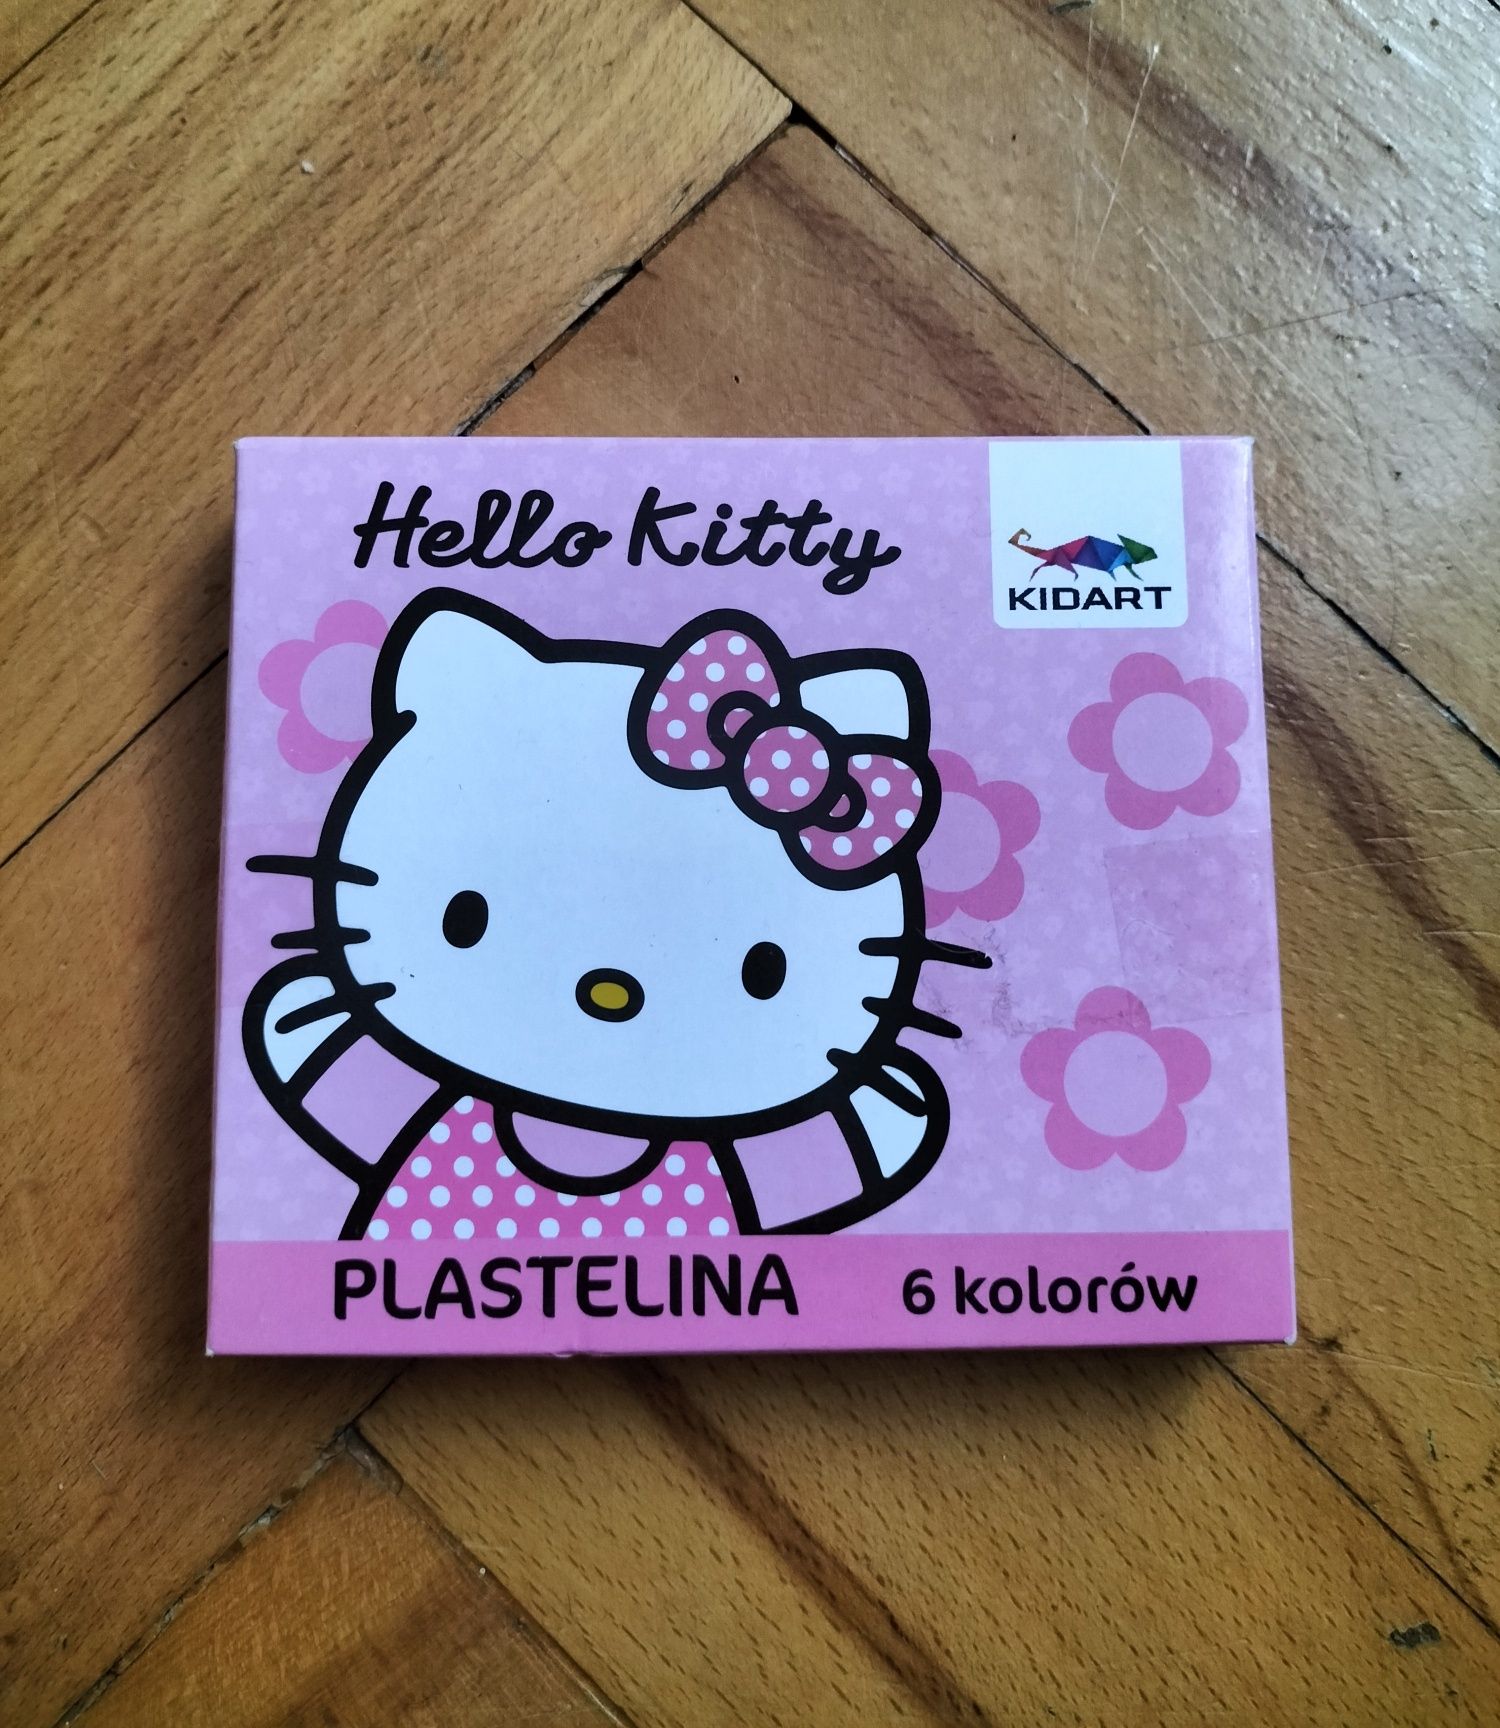 Plastelina Hello kitty 6 kolorów kidart